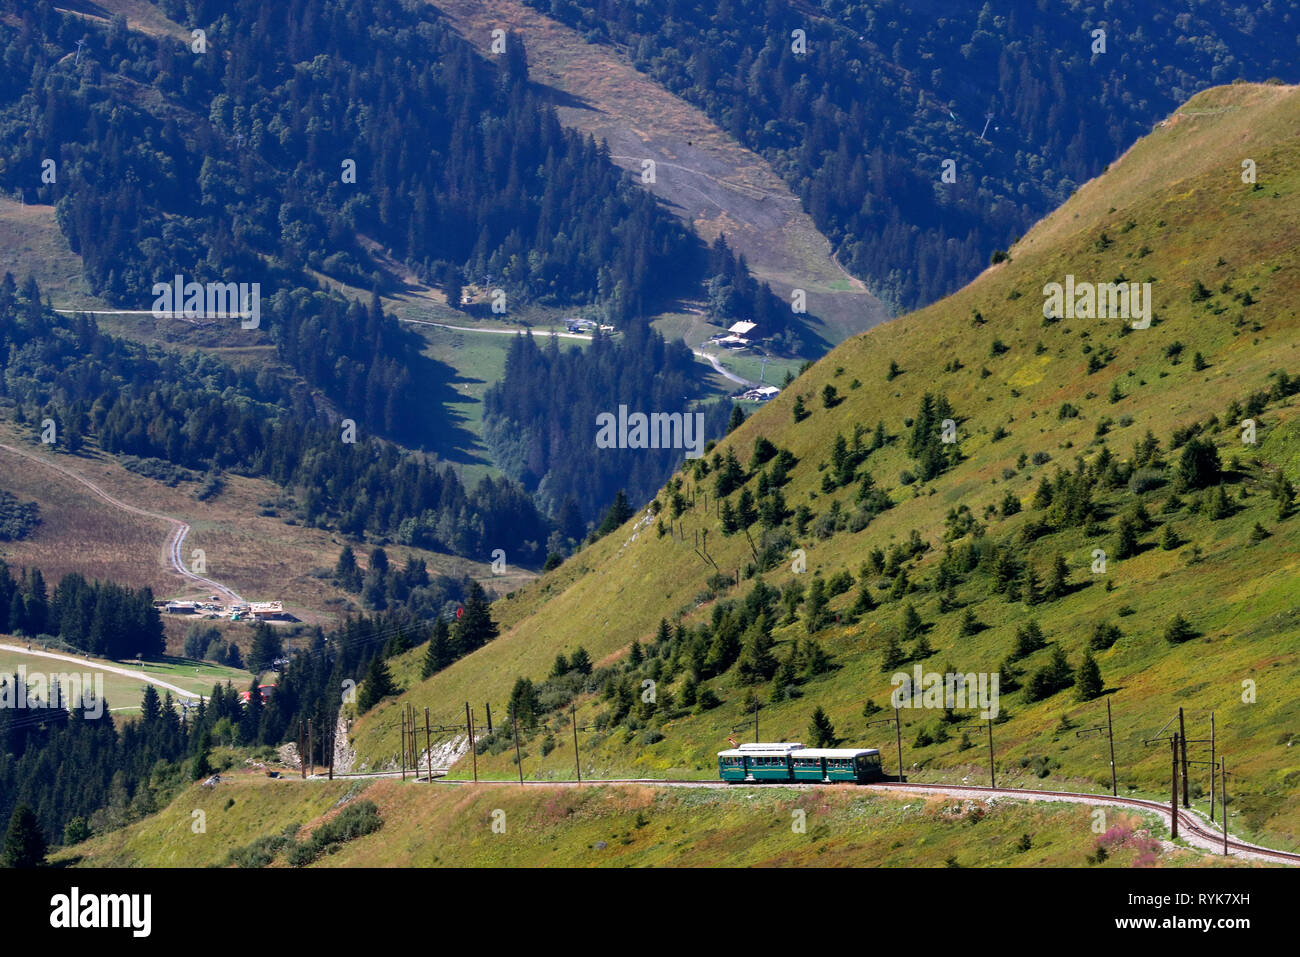 Sulle Alpi francesi. Il Mont Blanc del tram (TMB) è la montagna più alta della linea ferroviaria in Francia. Saint-Gervais. La Francia. Foto Stock